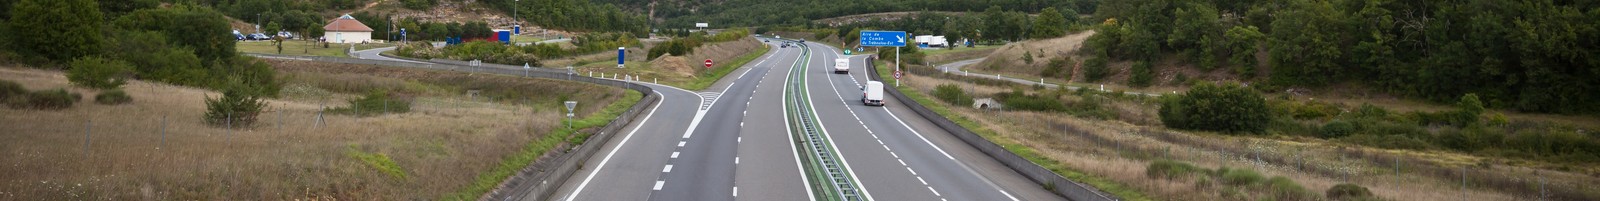 L’autoroute à flux libre apparaît en France